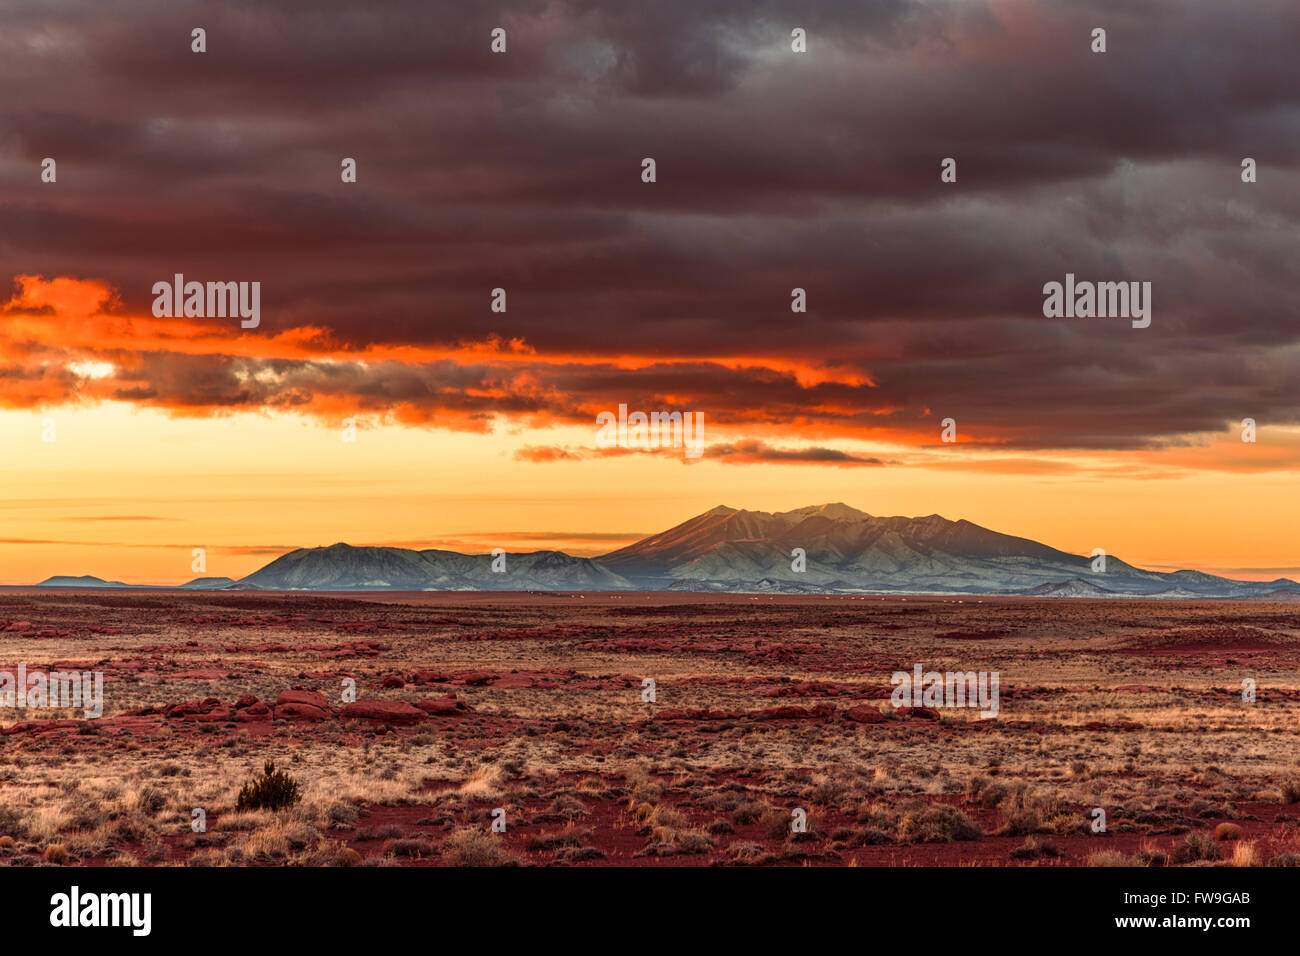 El colorido cielo del atardecer sobre la cordillera de San Francisco Peaks cerca de Flagstaff, Arizona Foto de stock